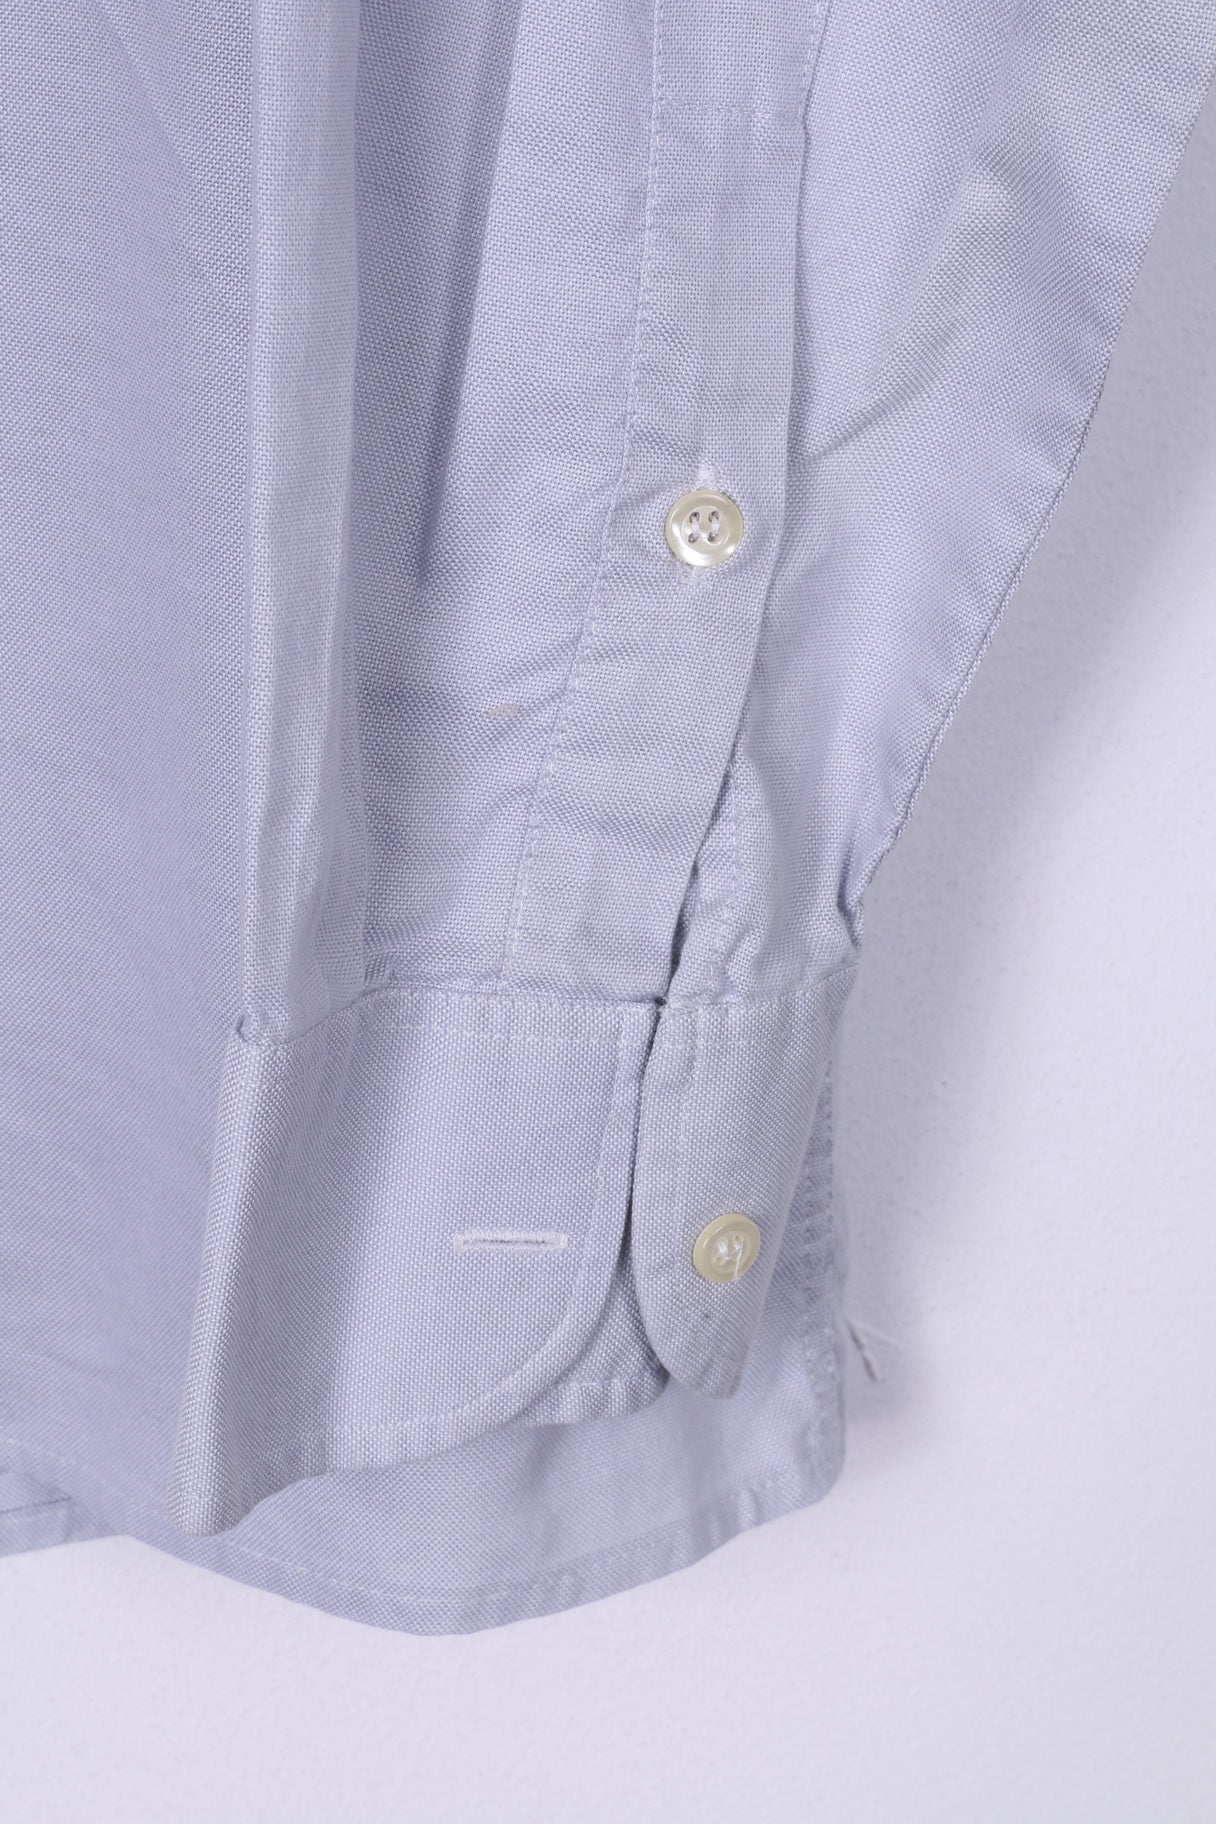 Camicia casual da uomo Jaeger L, colletto button down blu, manica lunga 